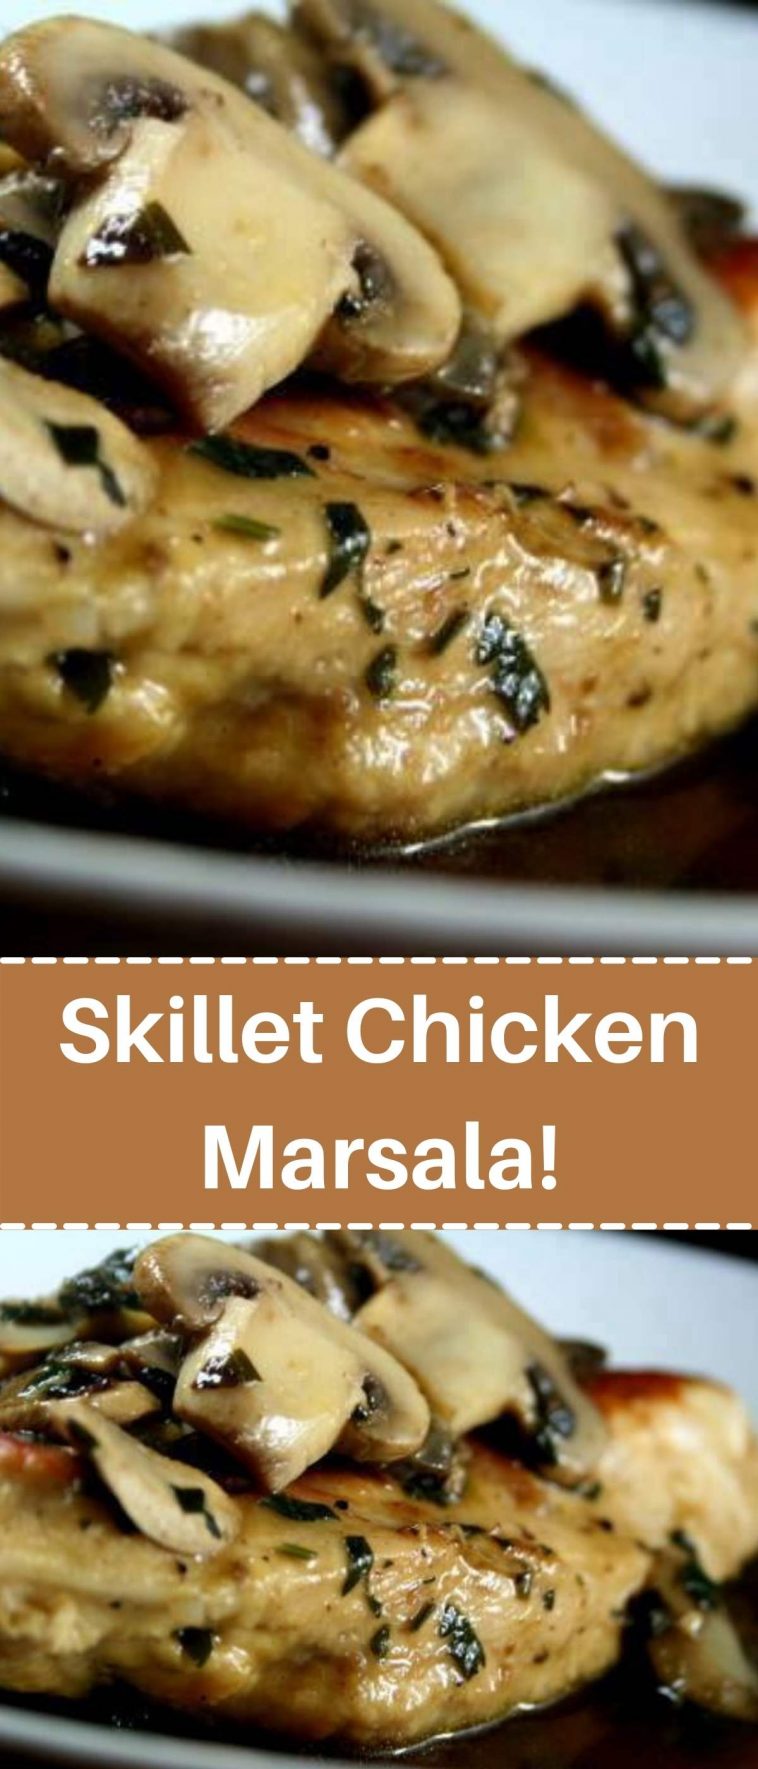 Skillet Chicken Marsala!